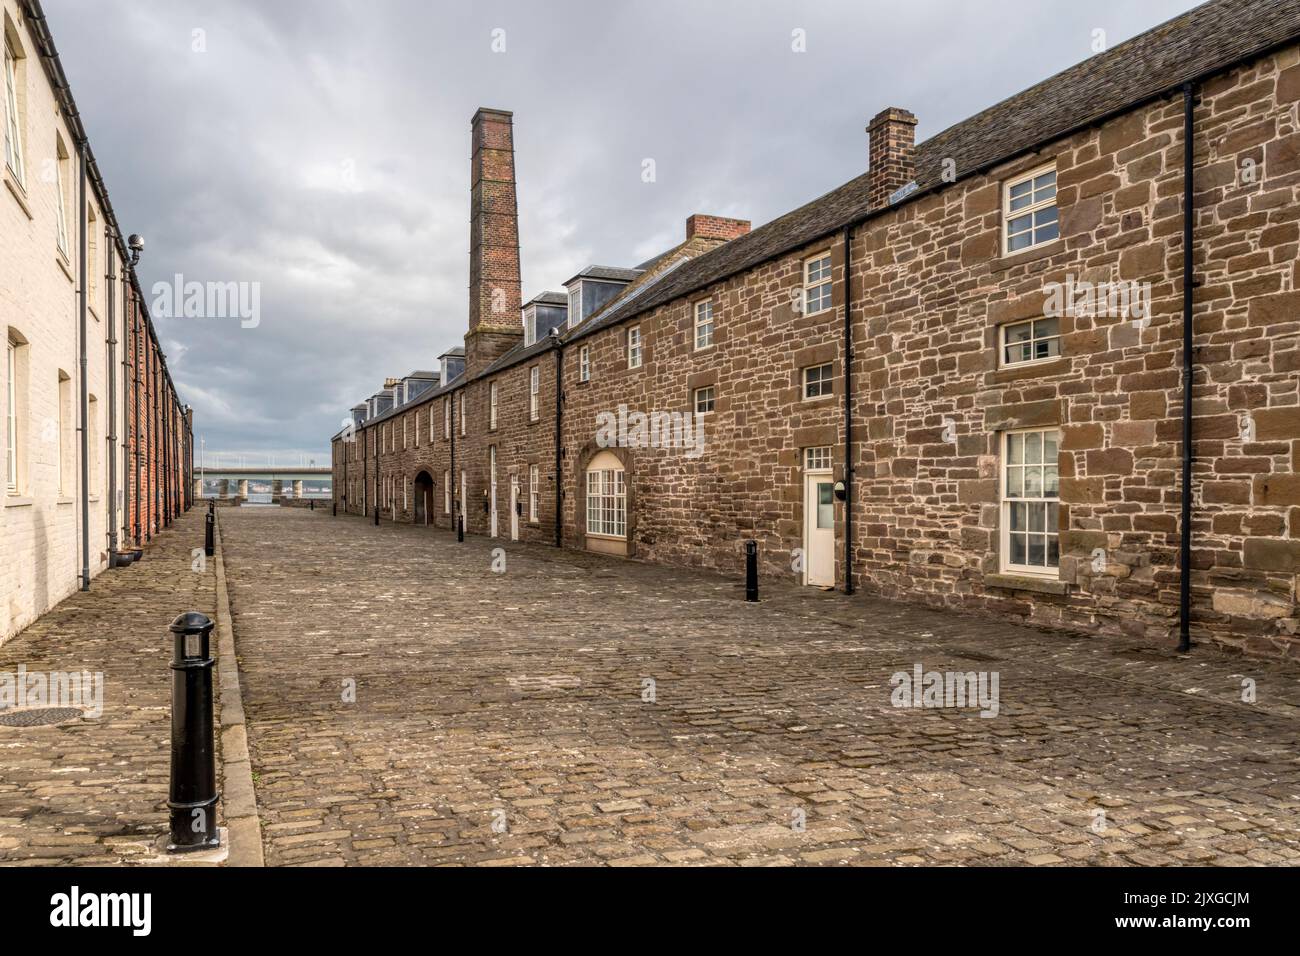 Chandlers Lane, Dundee contiene casas convertidas de los antiguos talleres del puerto que datan de 1837. La chimenea marca los herreros originales. Foto de stock